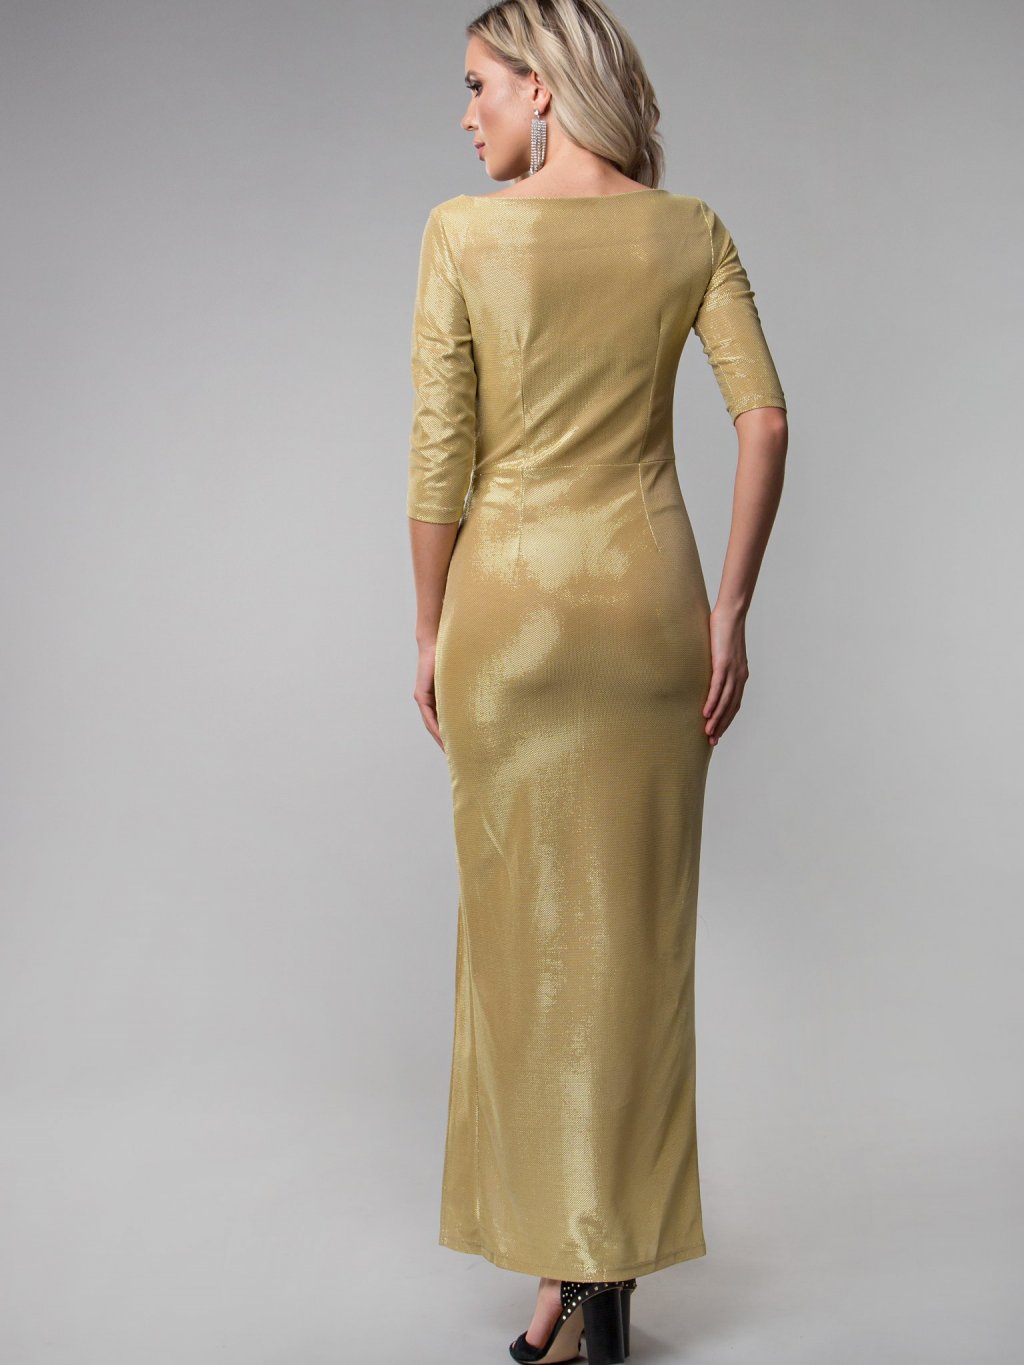 Платье Эшли из трикотажа -люрекс золото П-184-2 - 2